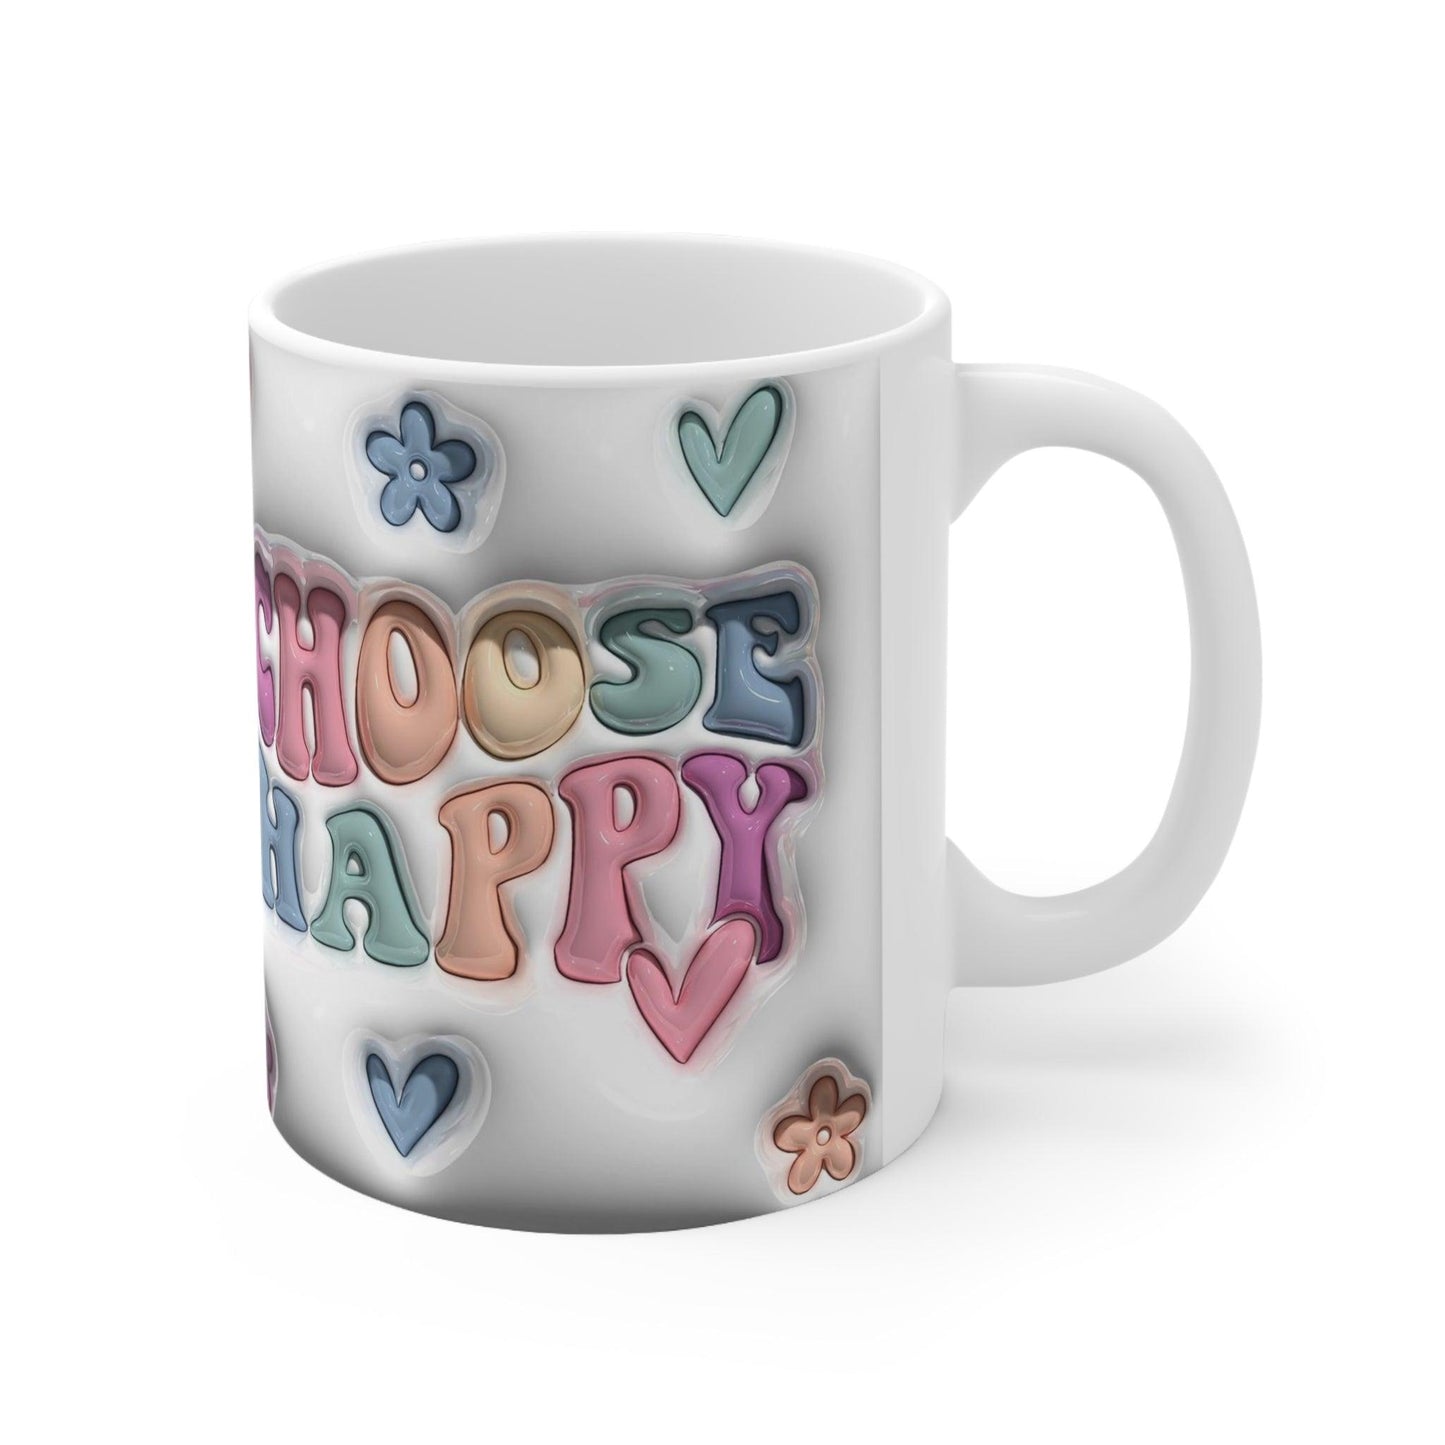 Choose Happy Ceramic Mug 11oz